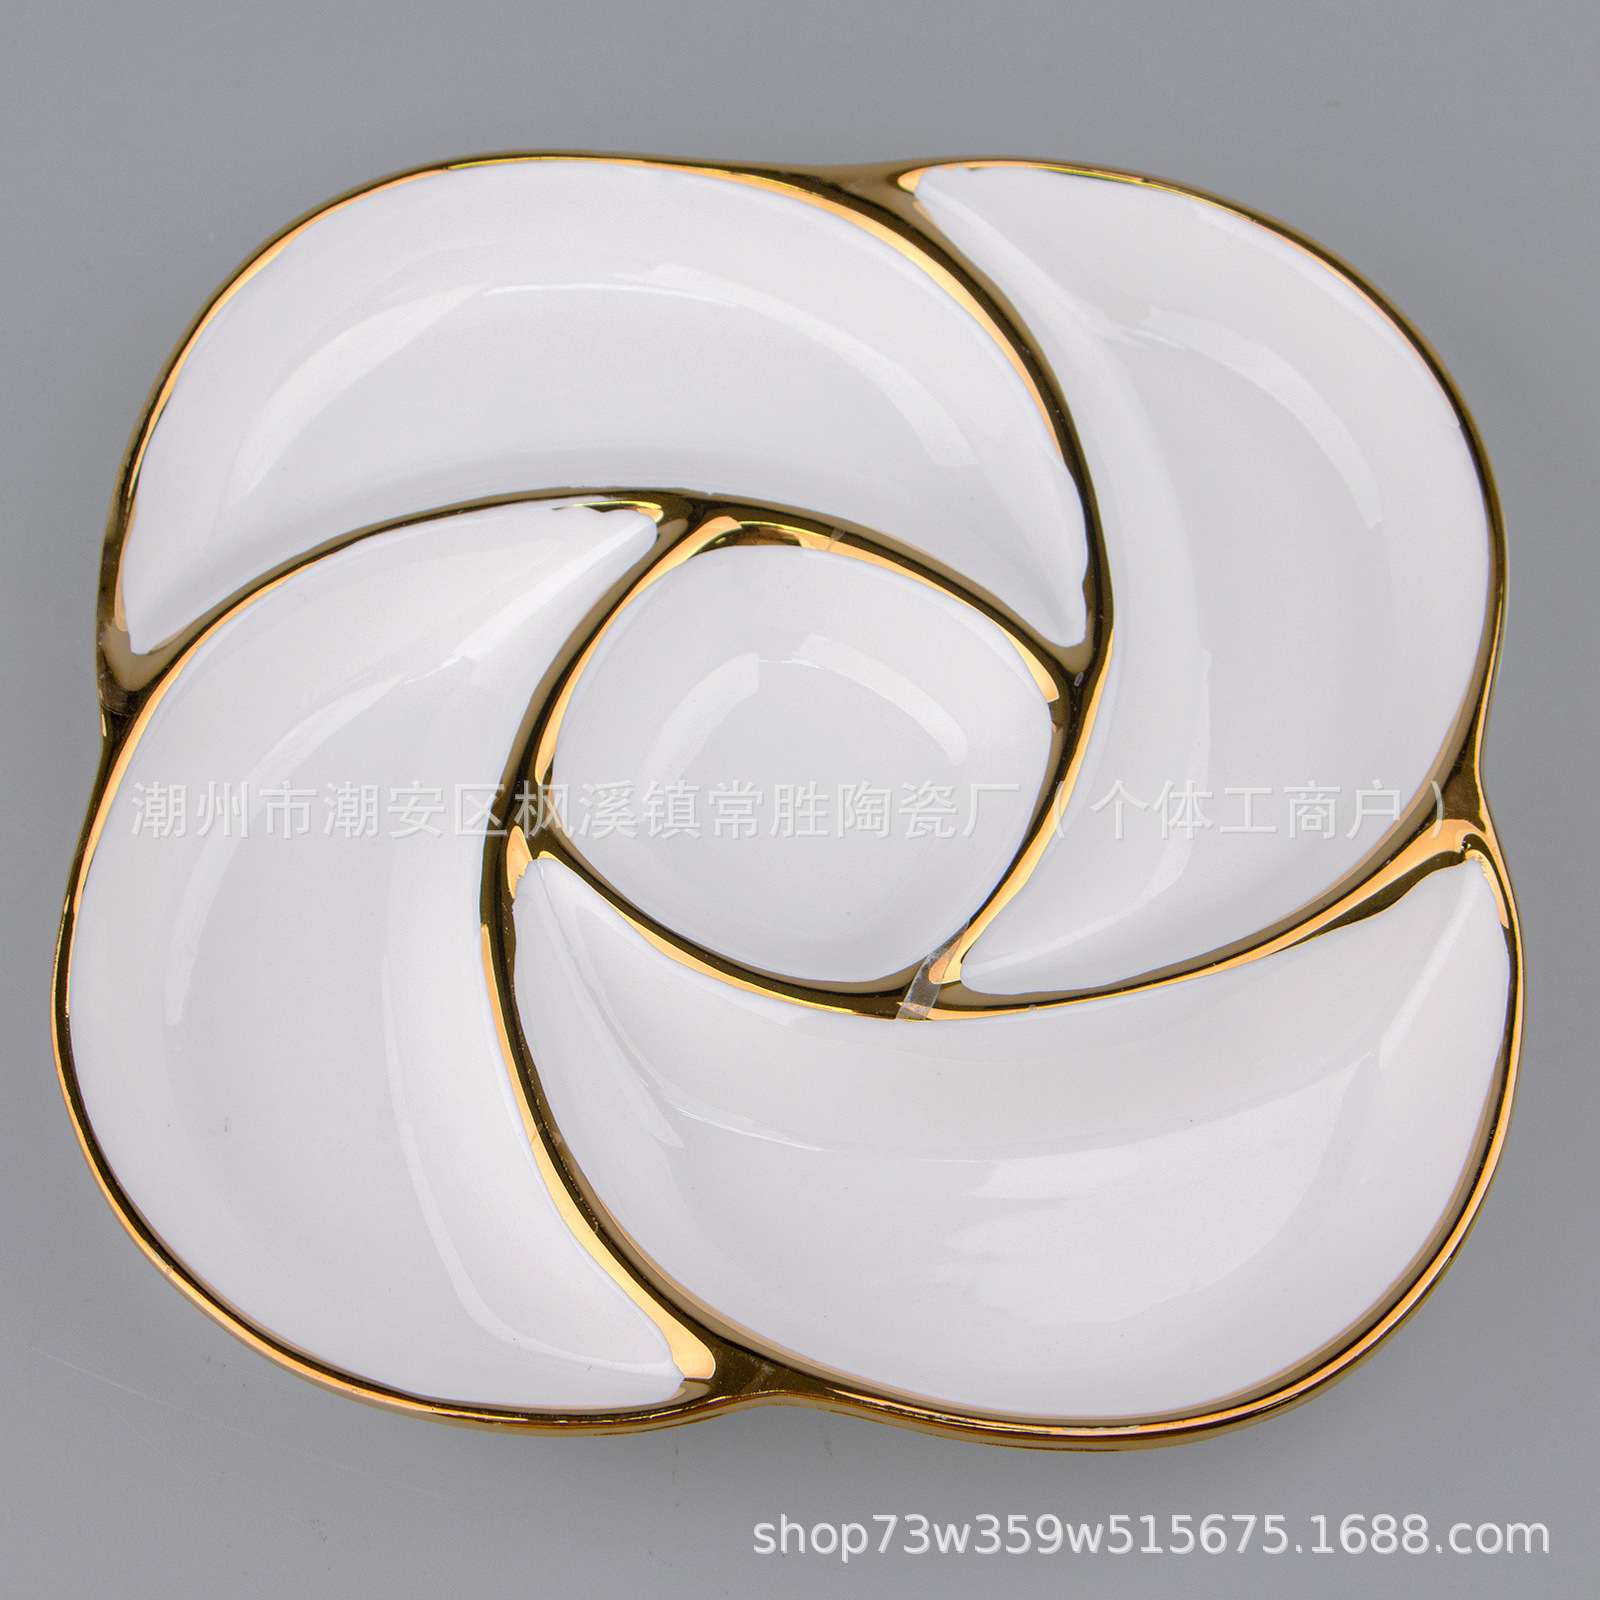 厂家直销纯白色陶瓷异形盘镀金五果盘批发 五格造型凉菜水果瓷盘